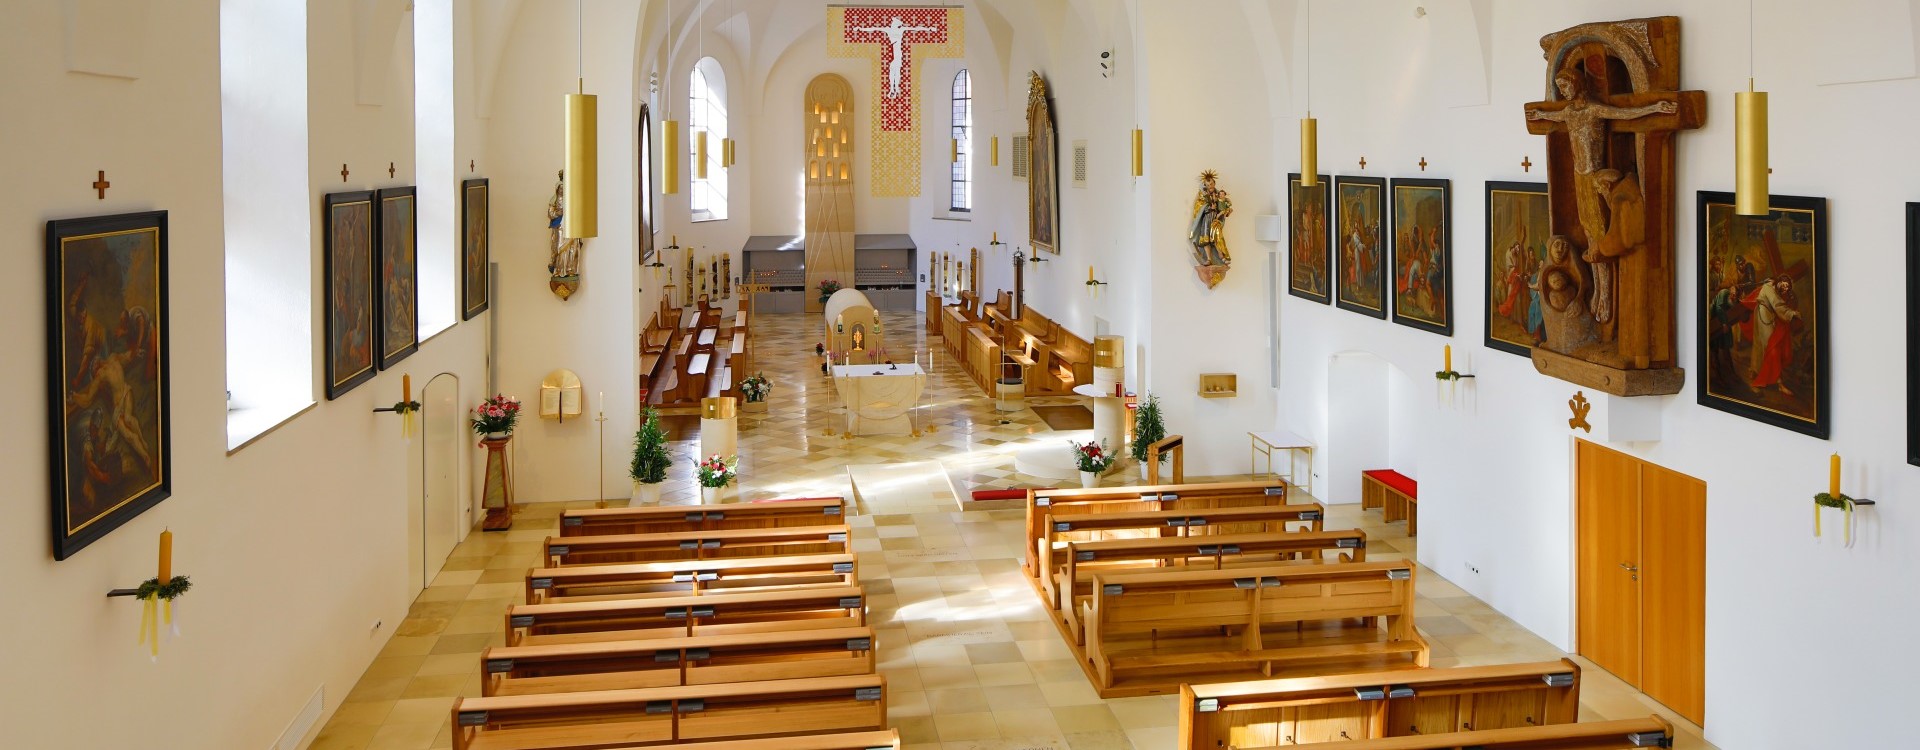 Innenaufnahme der Bruder Konrad Kirche mit Blick über die Bankreihen zum Altarbereich.